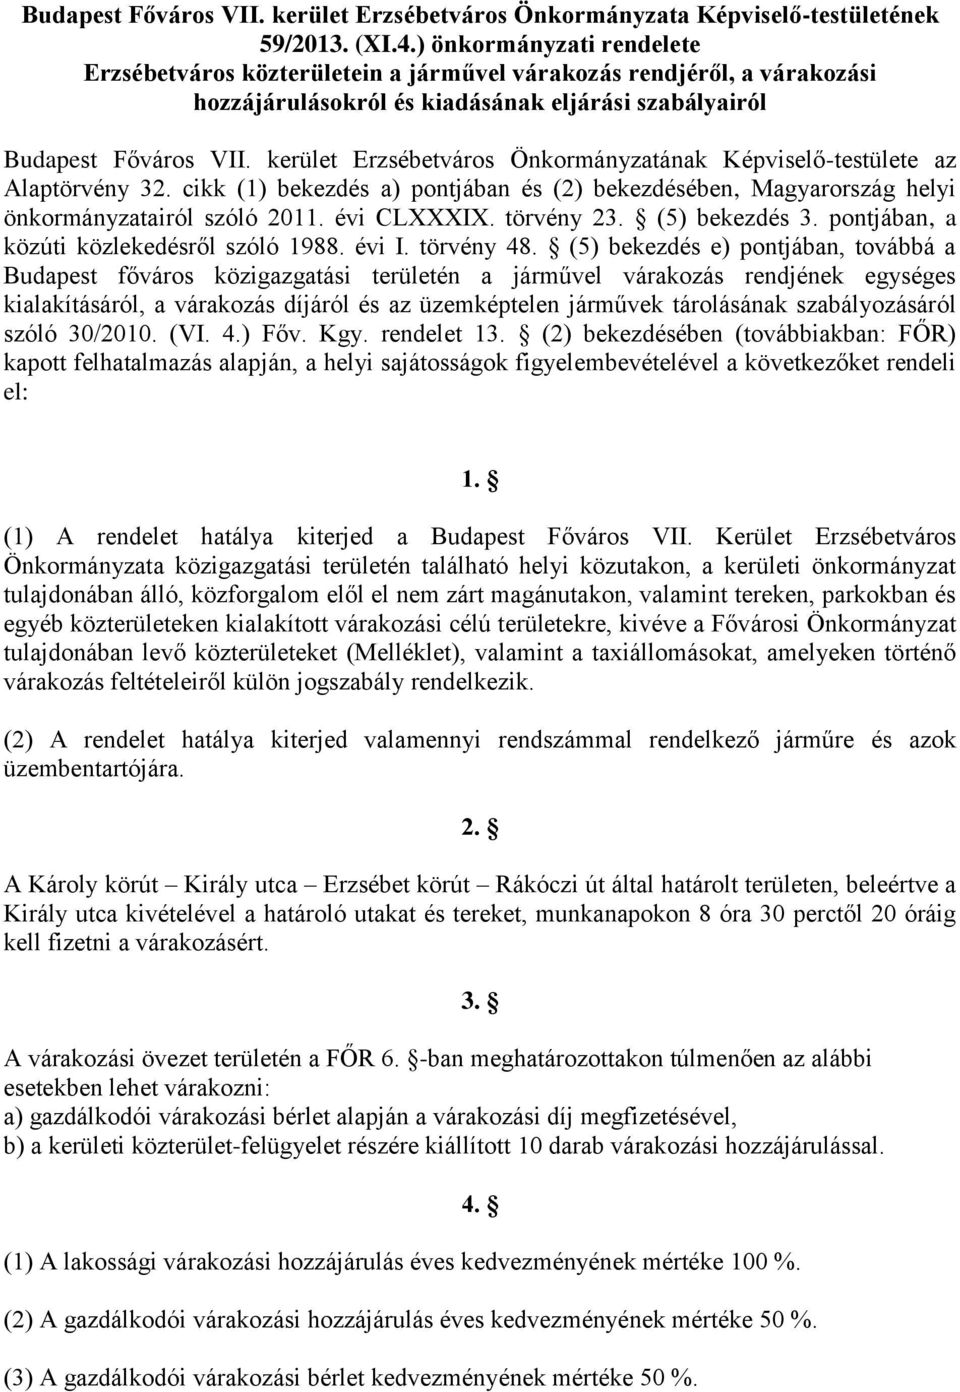 kerület Erzsébetváros Önkormányzatának Képviselő-testülete az Alaptörvény 32. cikk (1) bekezdés a) pontjában és (2) bekezdésében, Magyarország helyi önkormányzatairól szóló 2011. évi CLXXXIX.